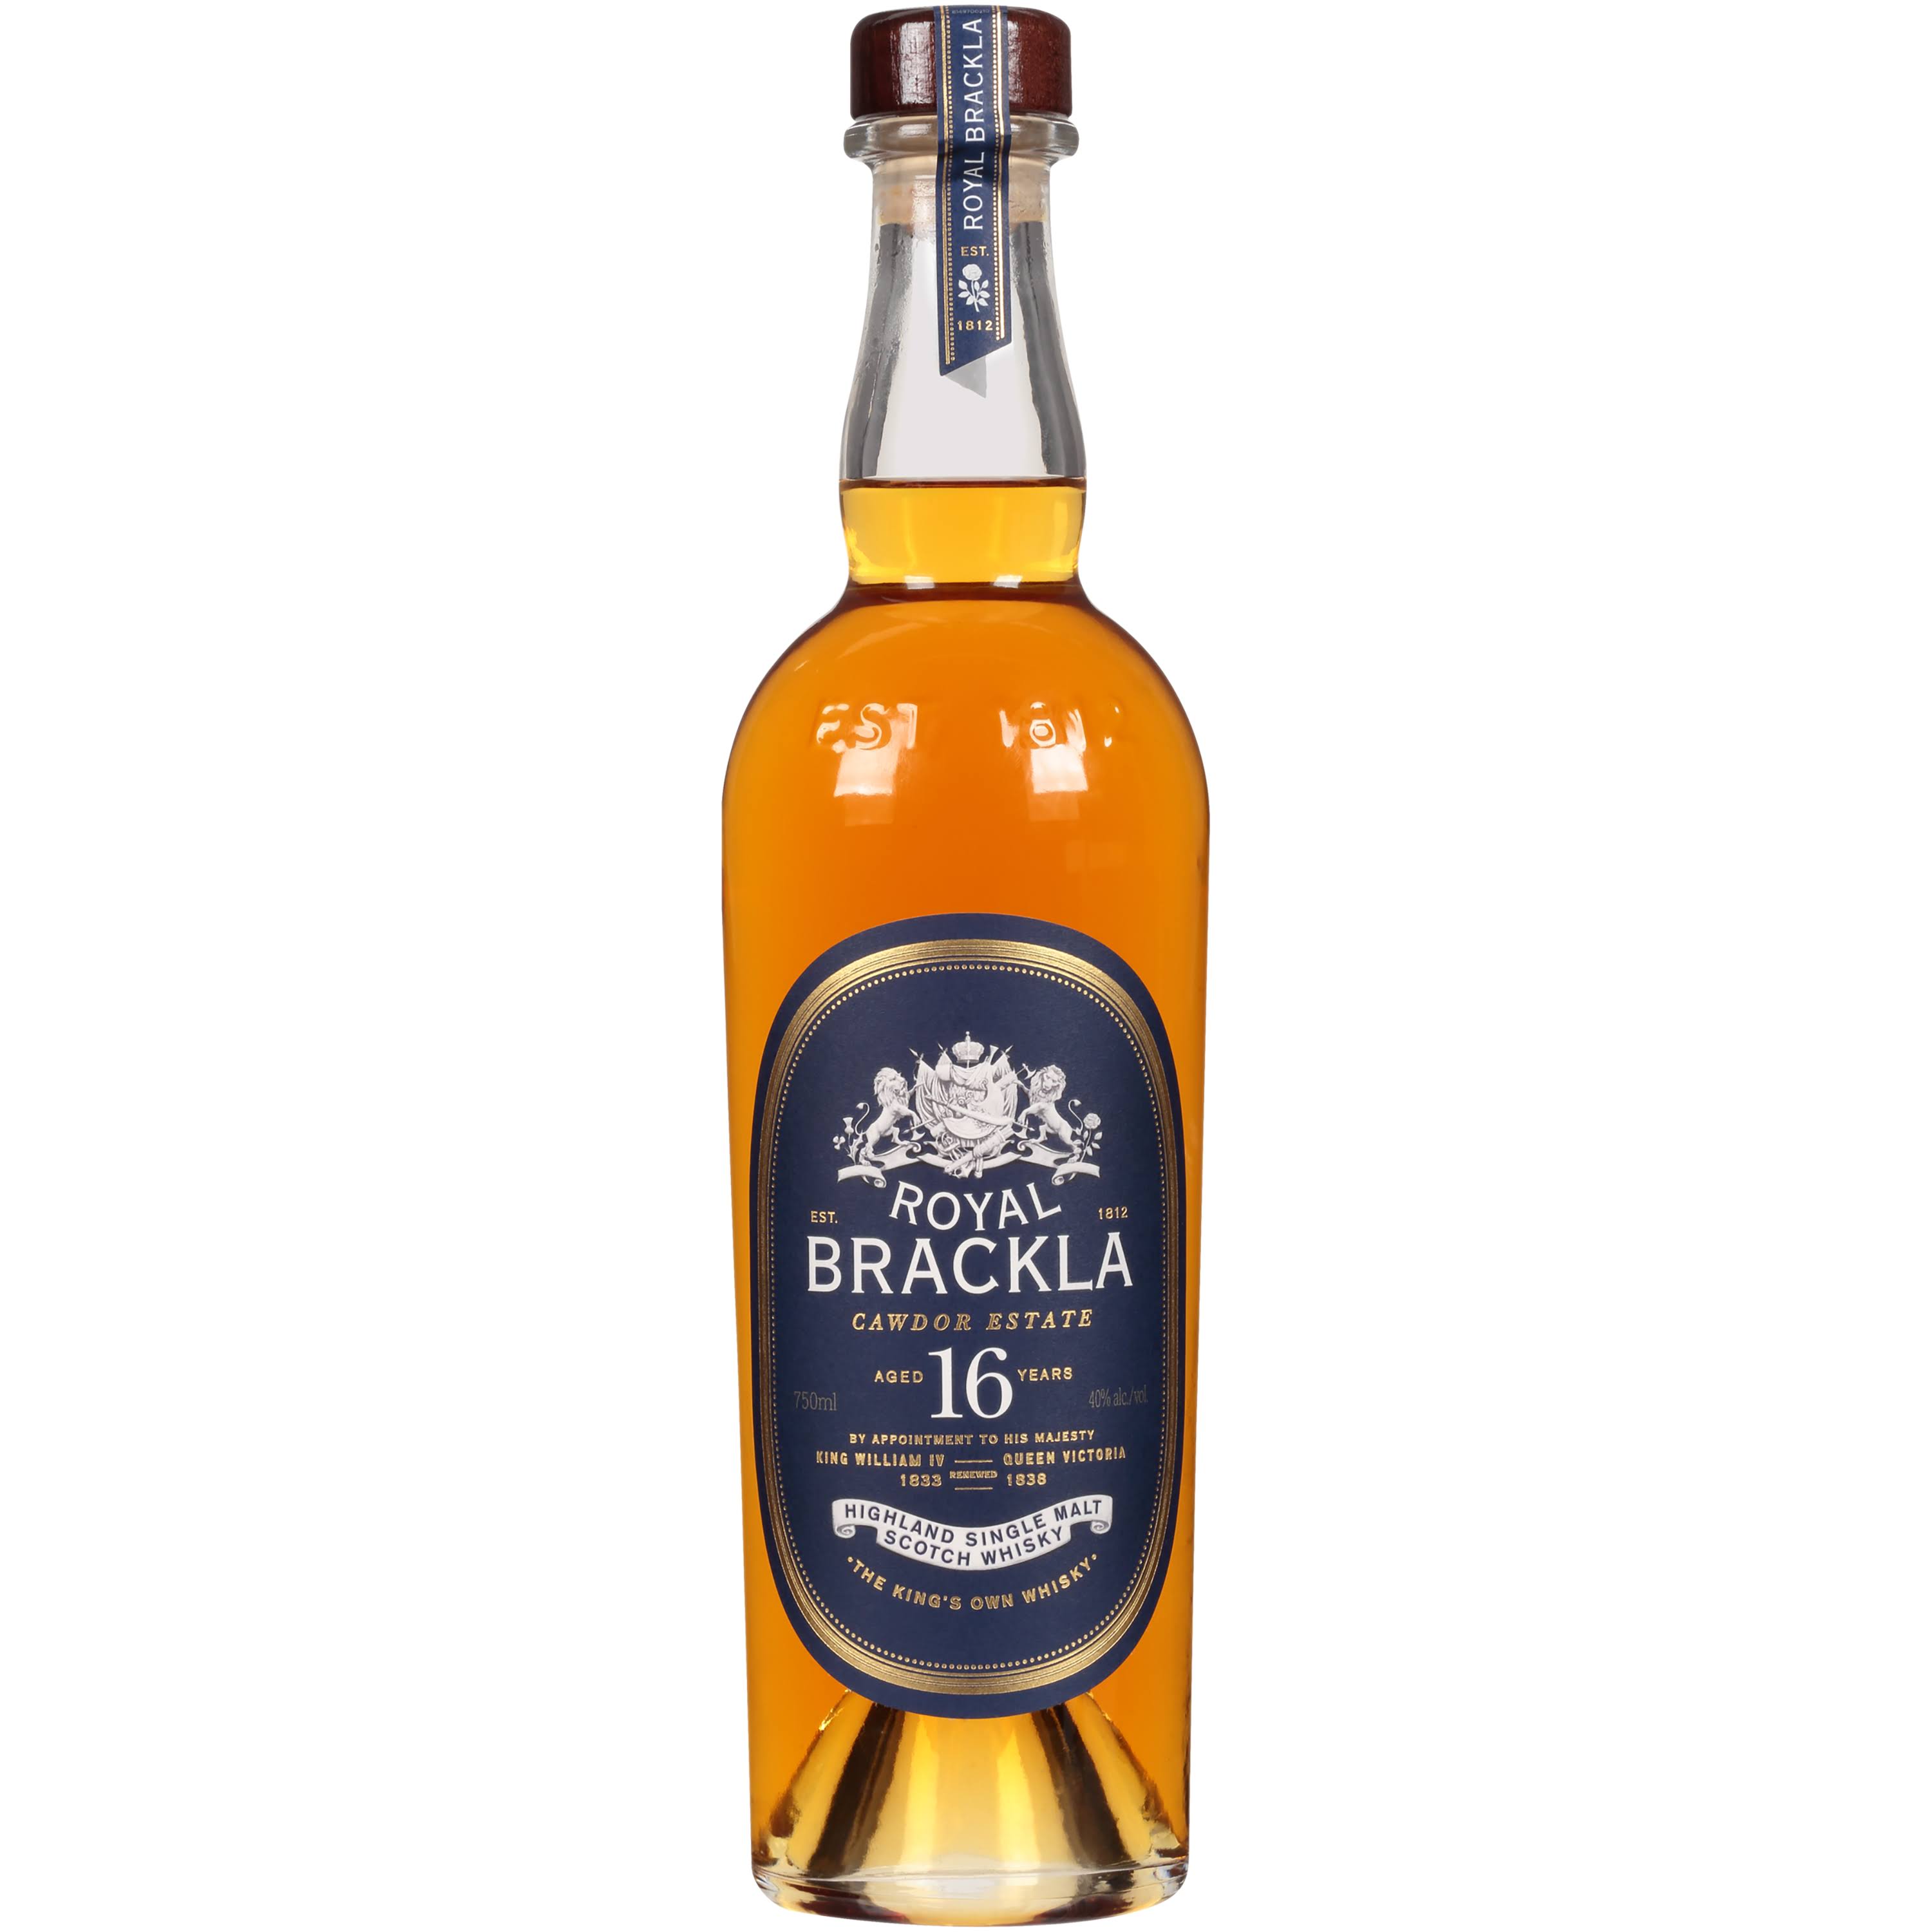 Royal Brackla Highland Single Malt Scotch Whisky - 700ml